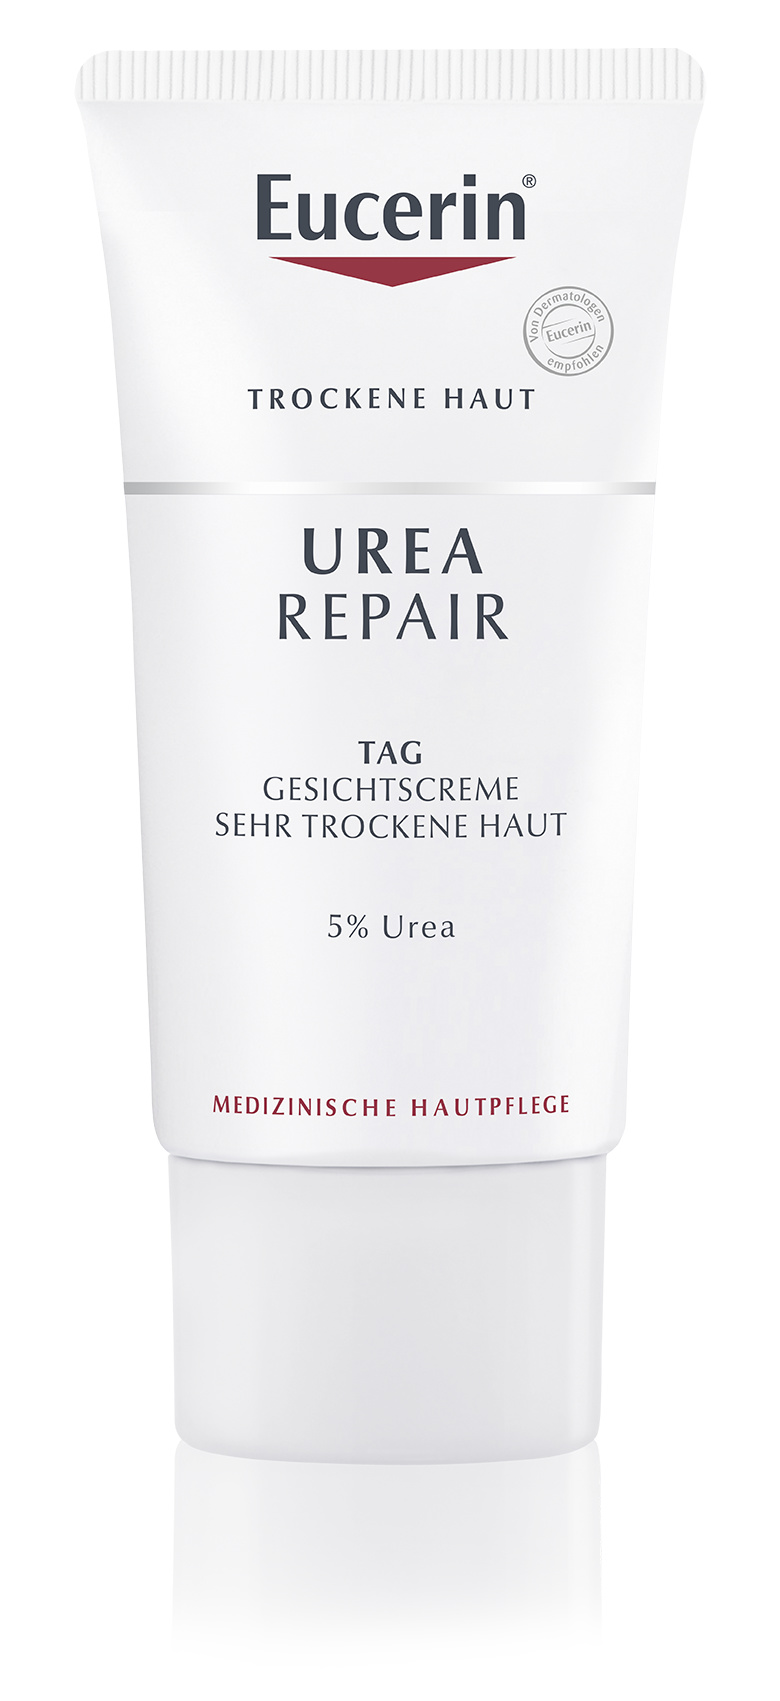 Eucerin Urea Repair Gesichtscreme 5% Tag (50 ml)